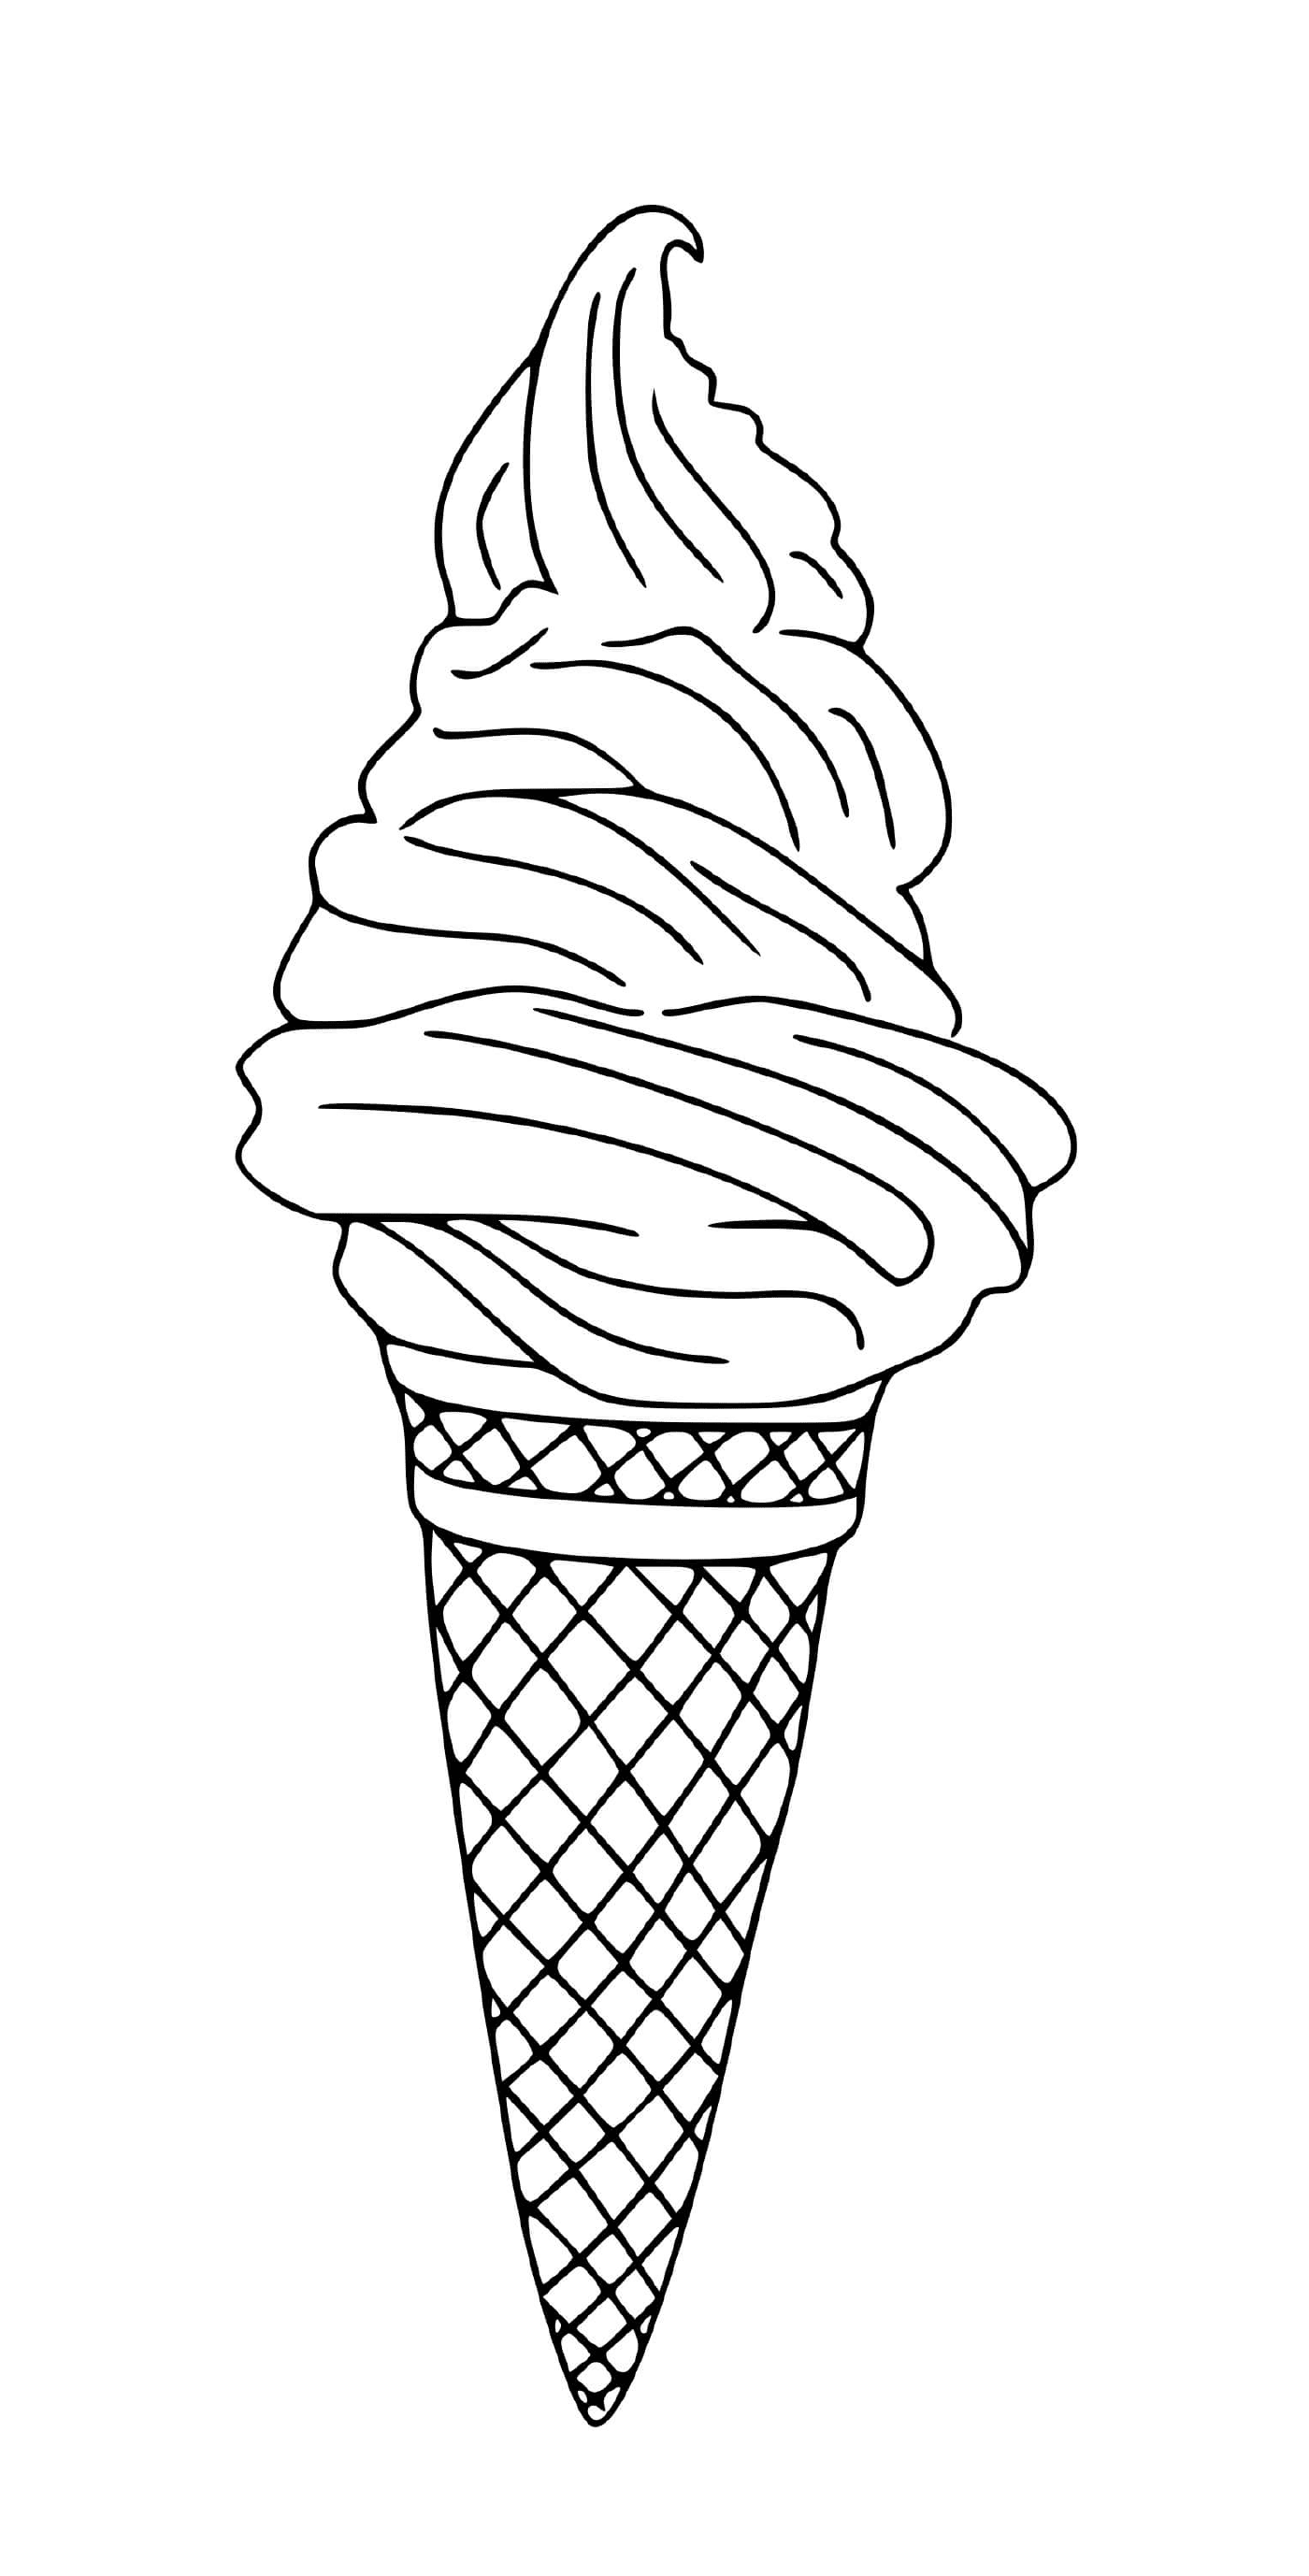  Apetecible Cornet de helado 